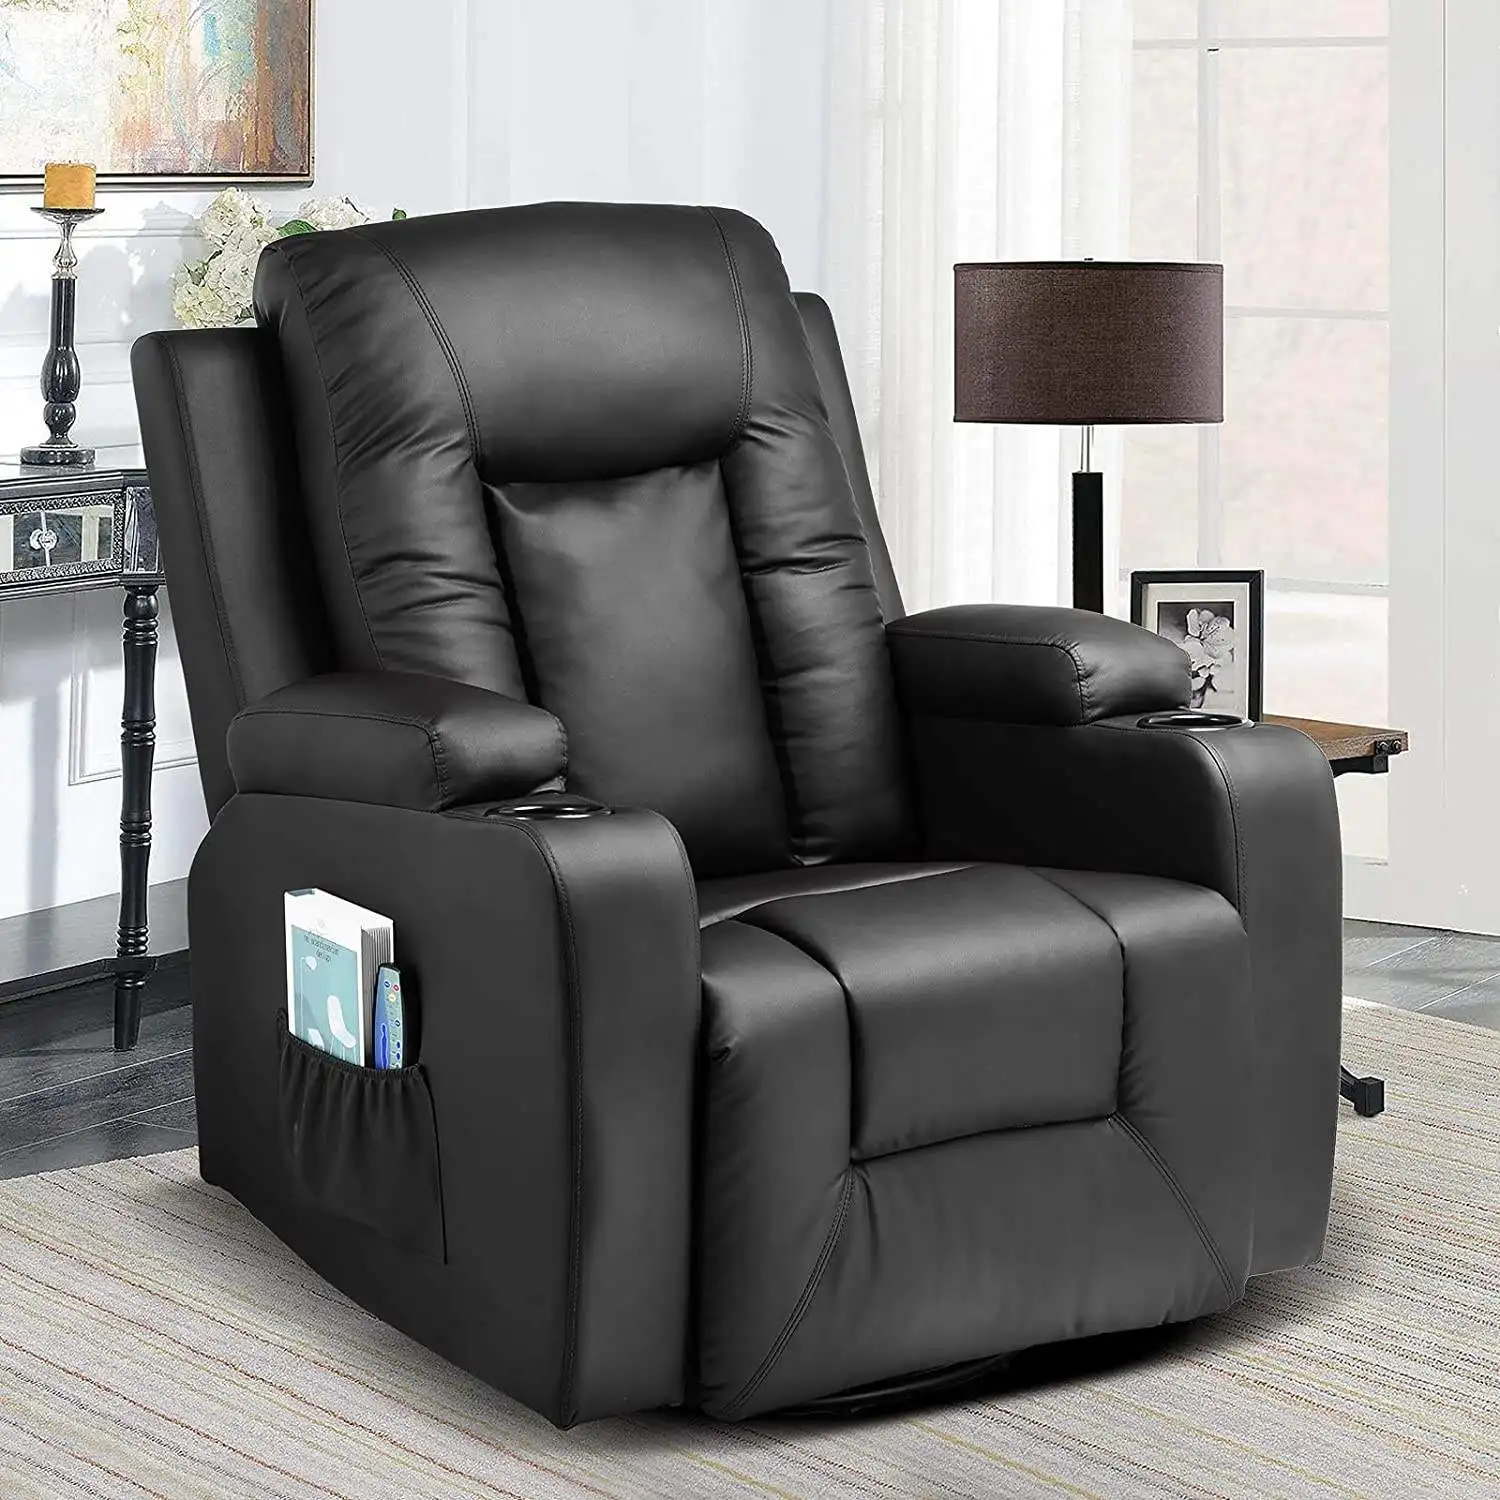 Cadeira reclinável tipo cama giratória manual ou elétrica individual relax Theater Seats